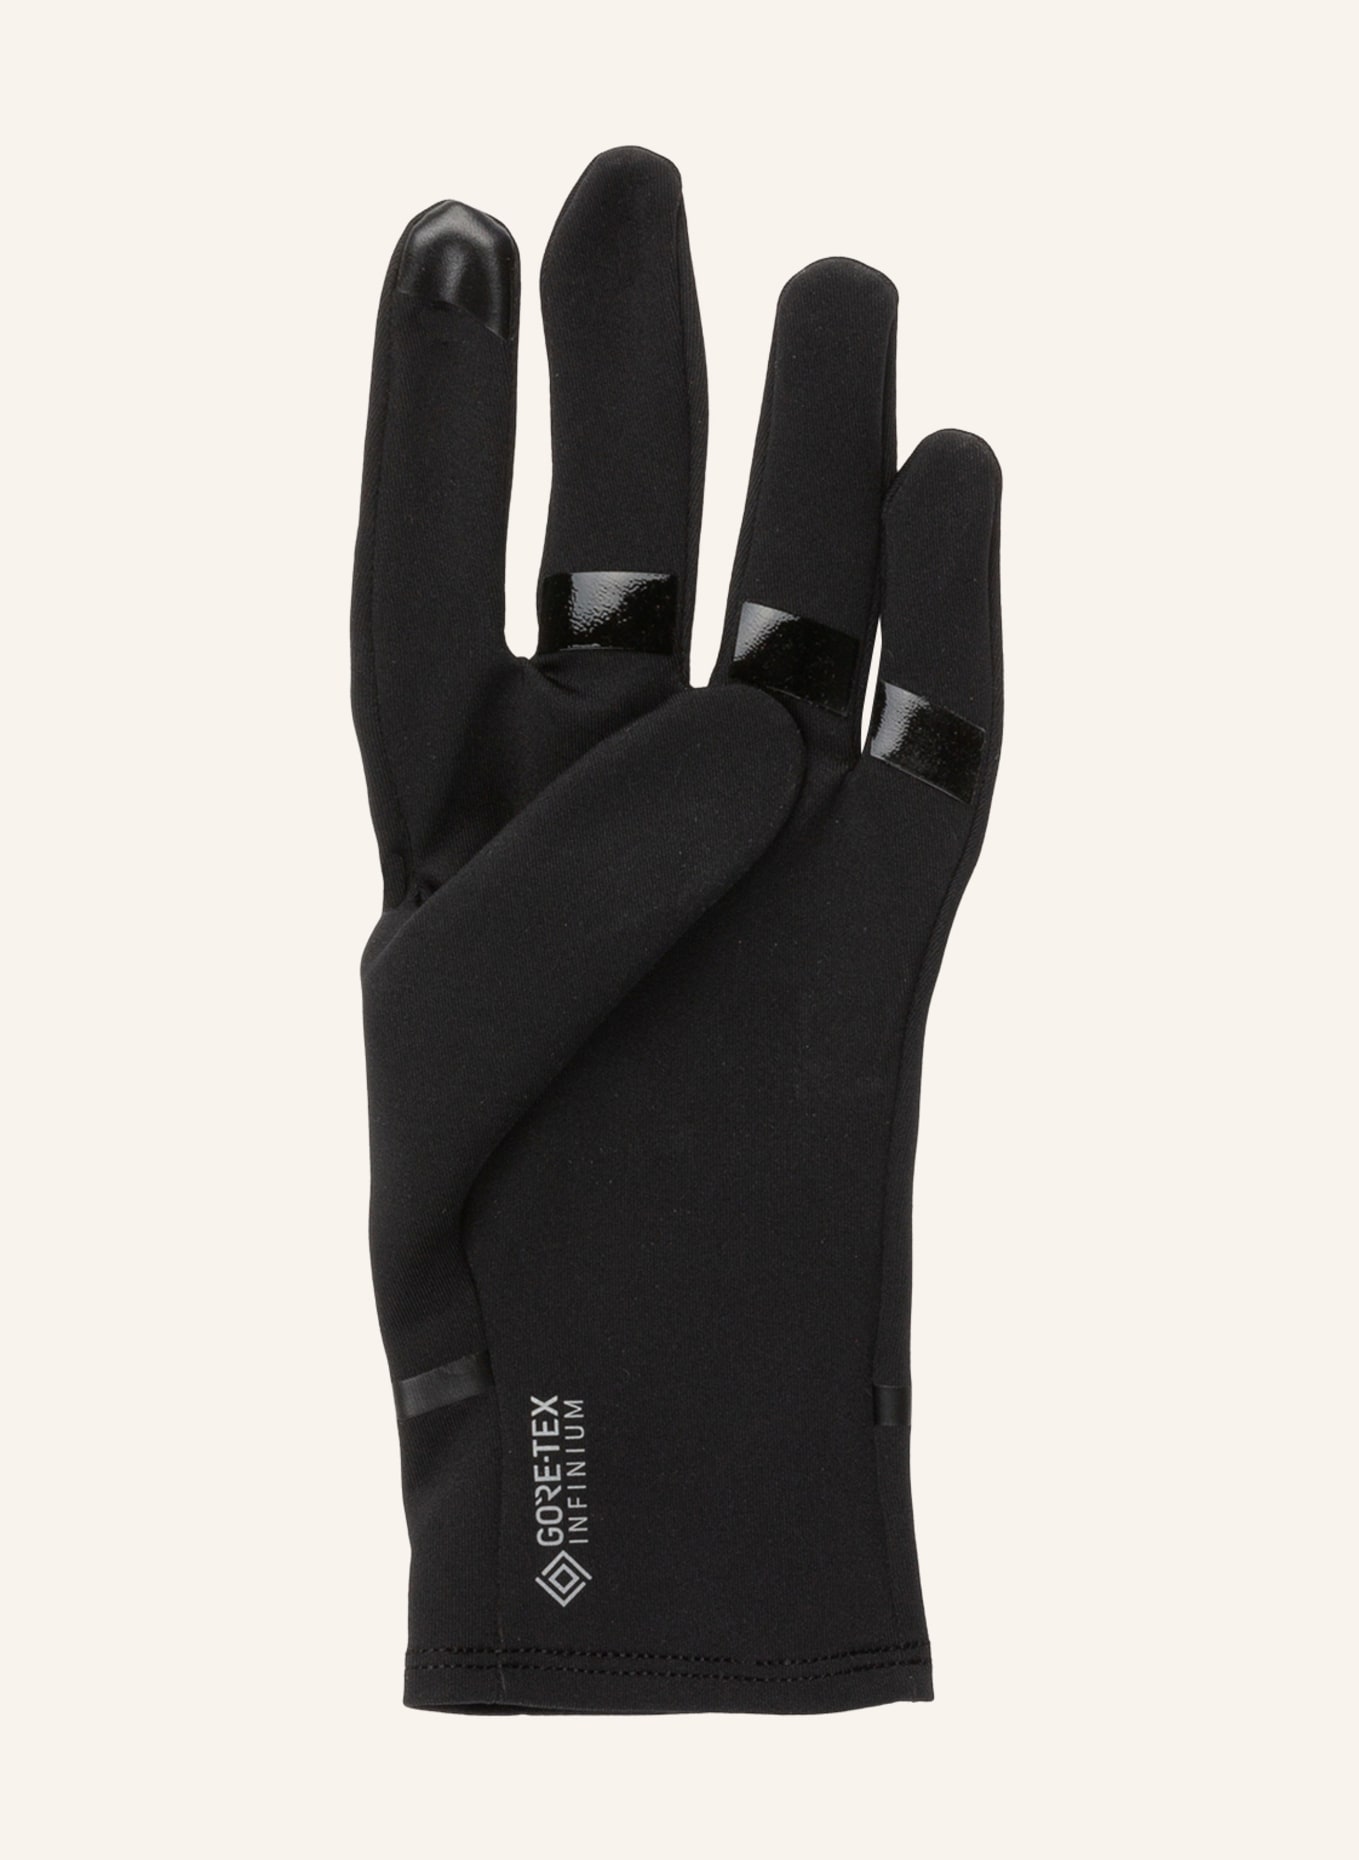 GORE RUNNING WEAR Multisport-Handschuhe GORE-TEX INFINIUM™, Farbe: SCHWARZ (Bild 2)